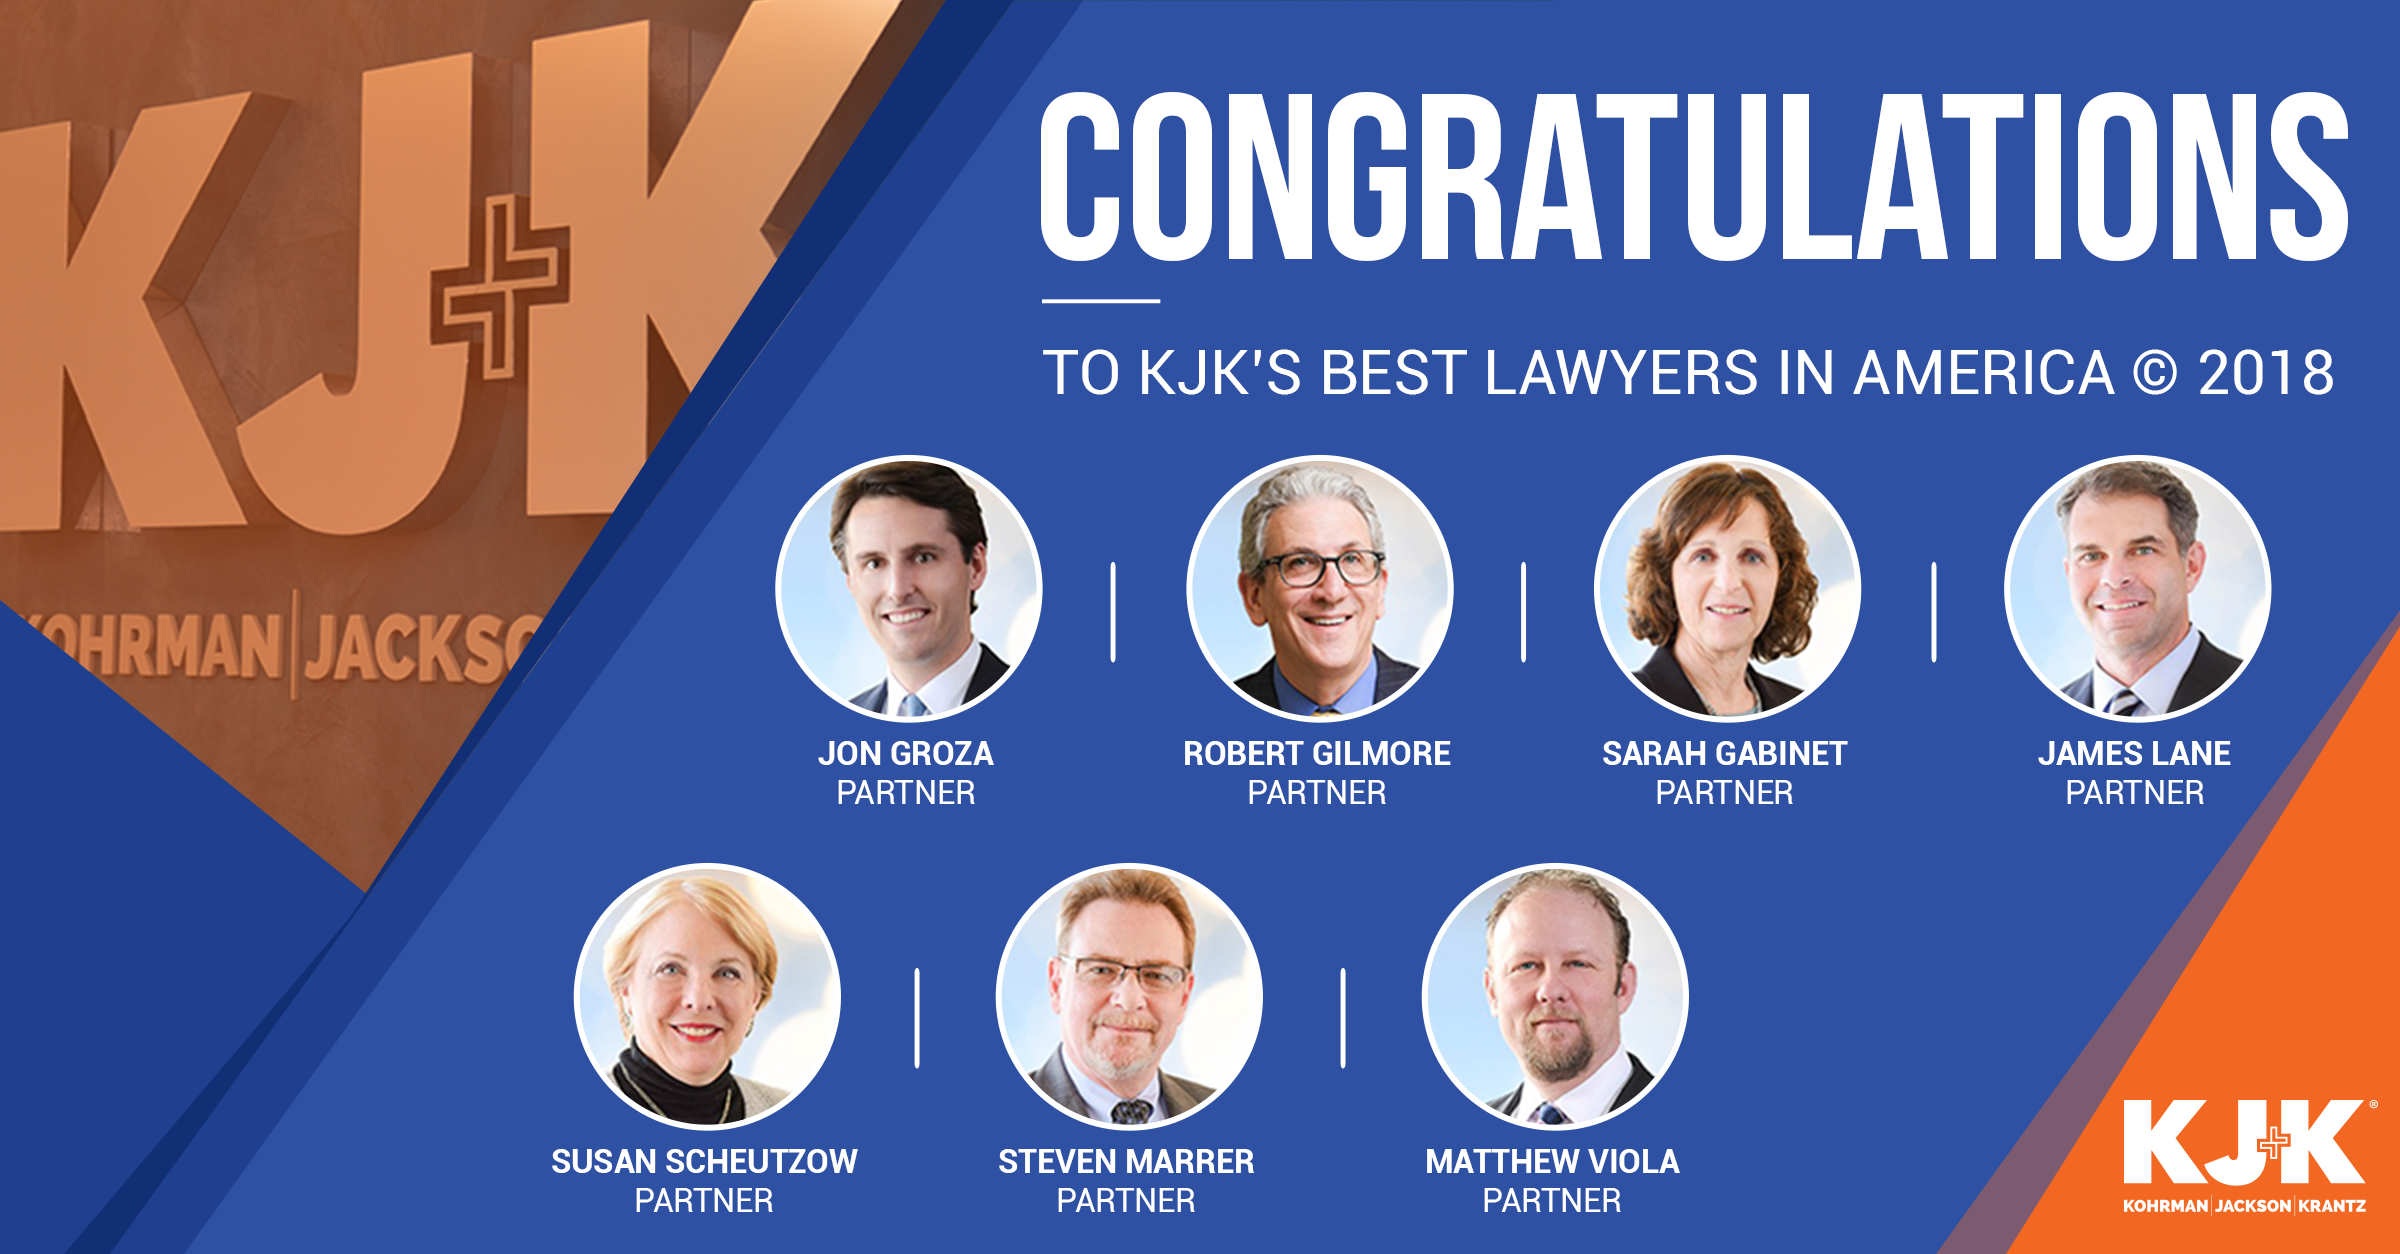 Best Lawyers